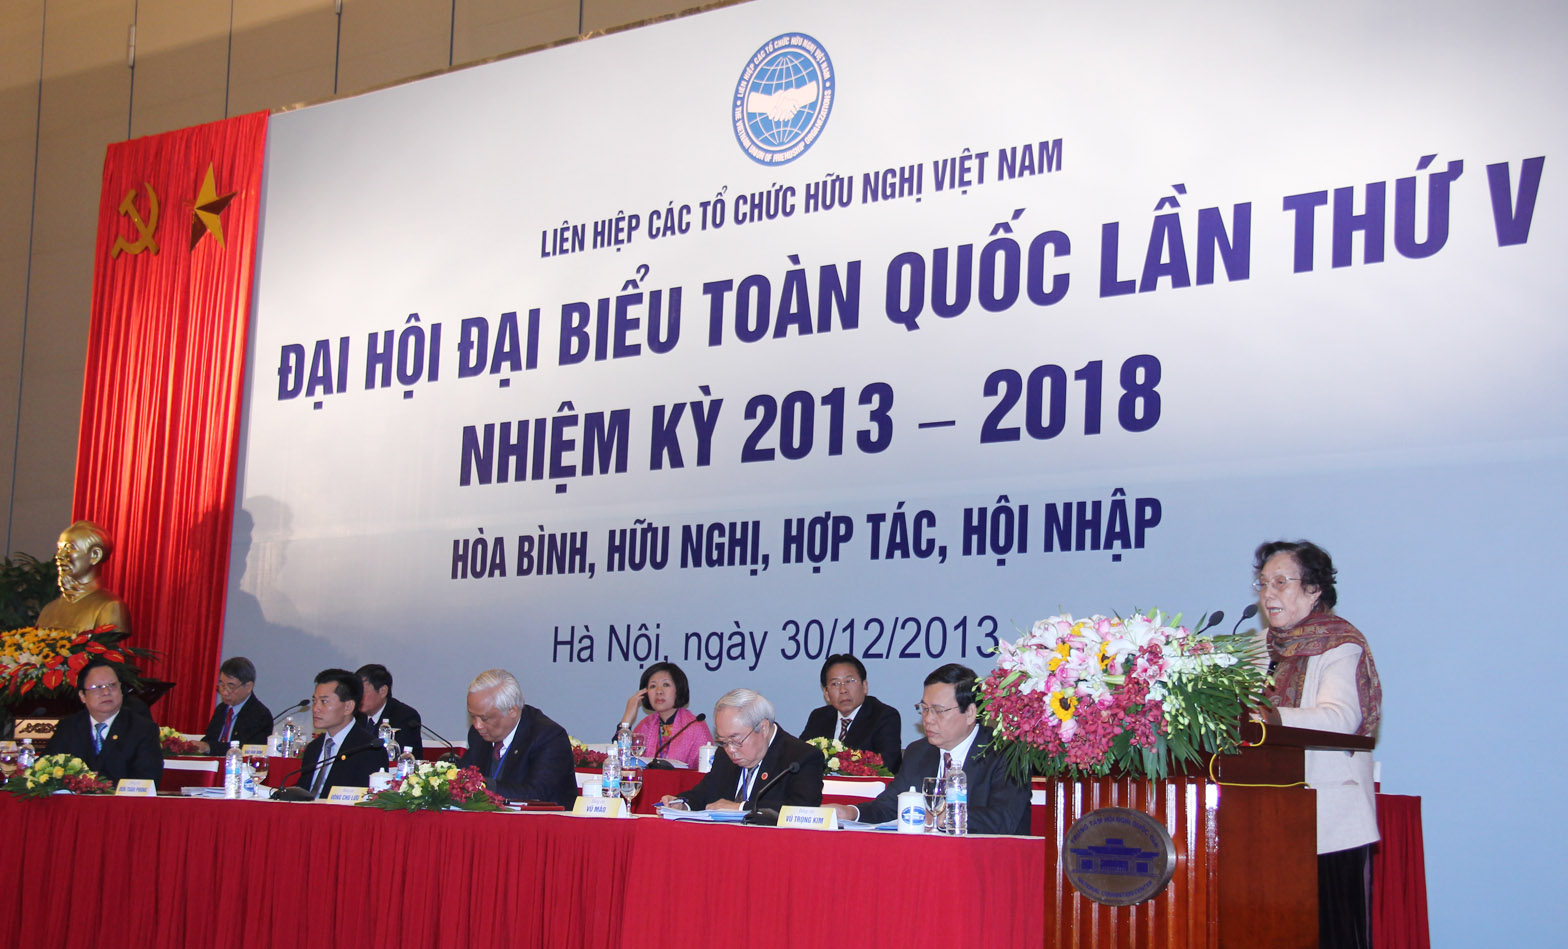 Bài phát biểu của bà Nguyễn Thị Bình, nguyên Phó Chủ tịch nước, tại Đại hội đại biểu toàn quốc Liên hiệp các tổ chức hữu nghị Việt Nam lần thứ V